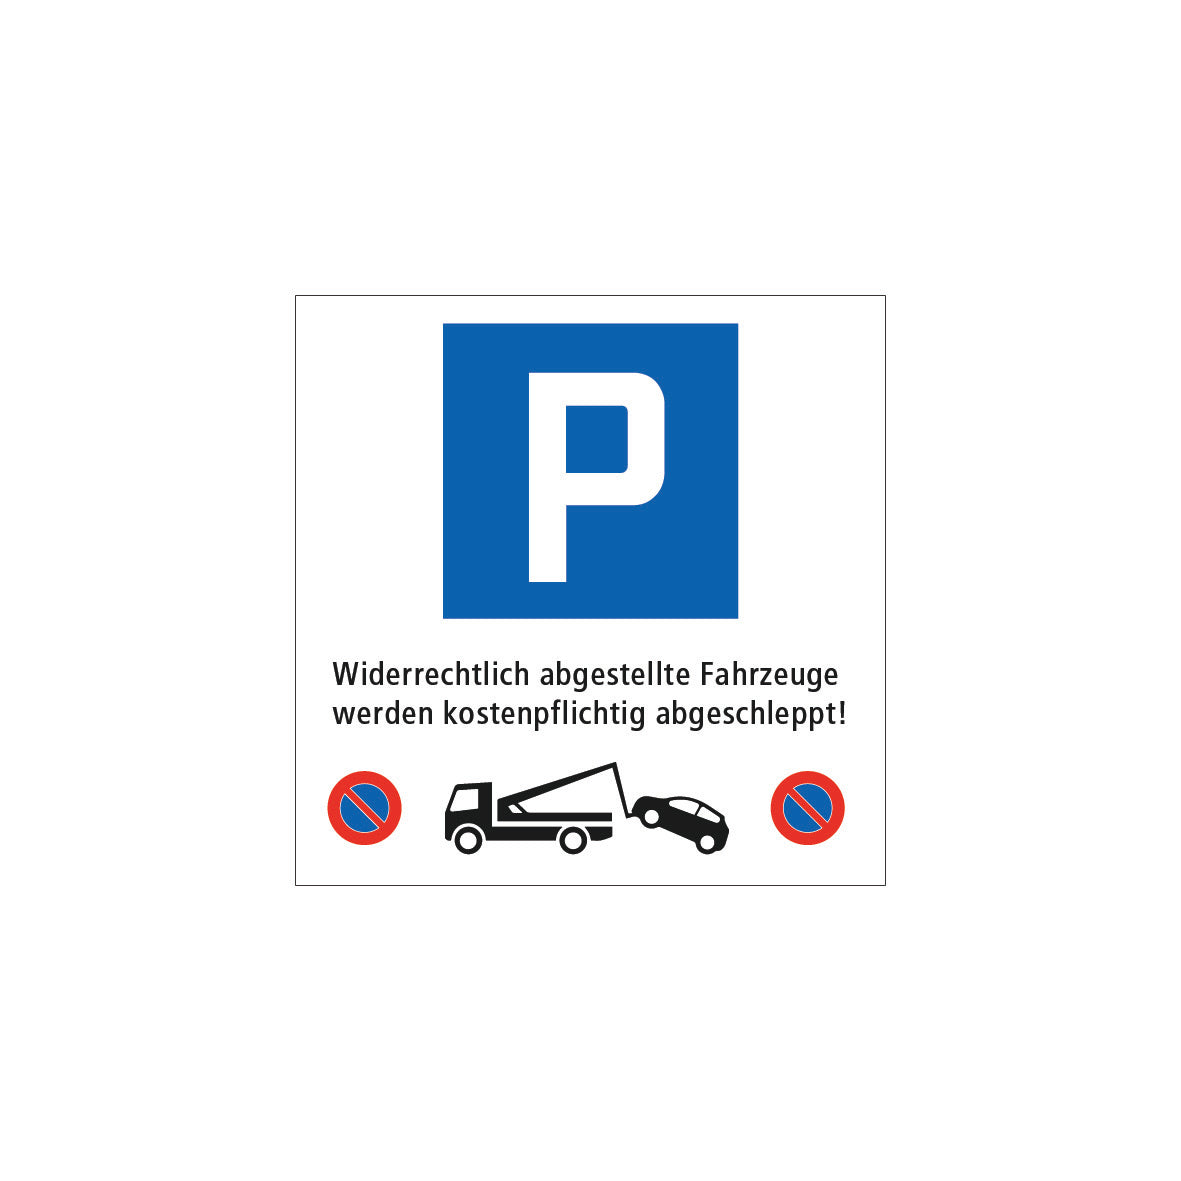 Abschleppsignal 7.0019, 4.17 und Abschlepp-Logo und Text: “Widerrechtlich abgestellte Fahrzeuge werden kostenpflichtig abgeschleppt”, 40 x 40 cm, EG